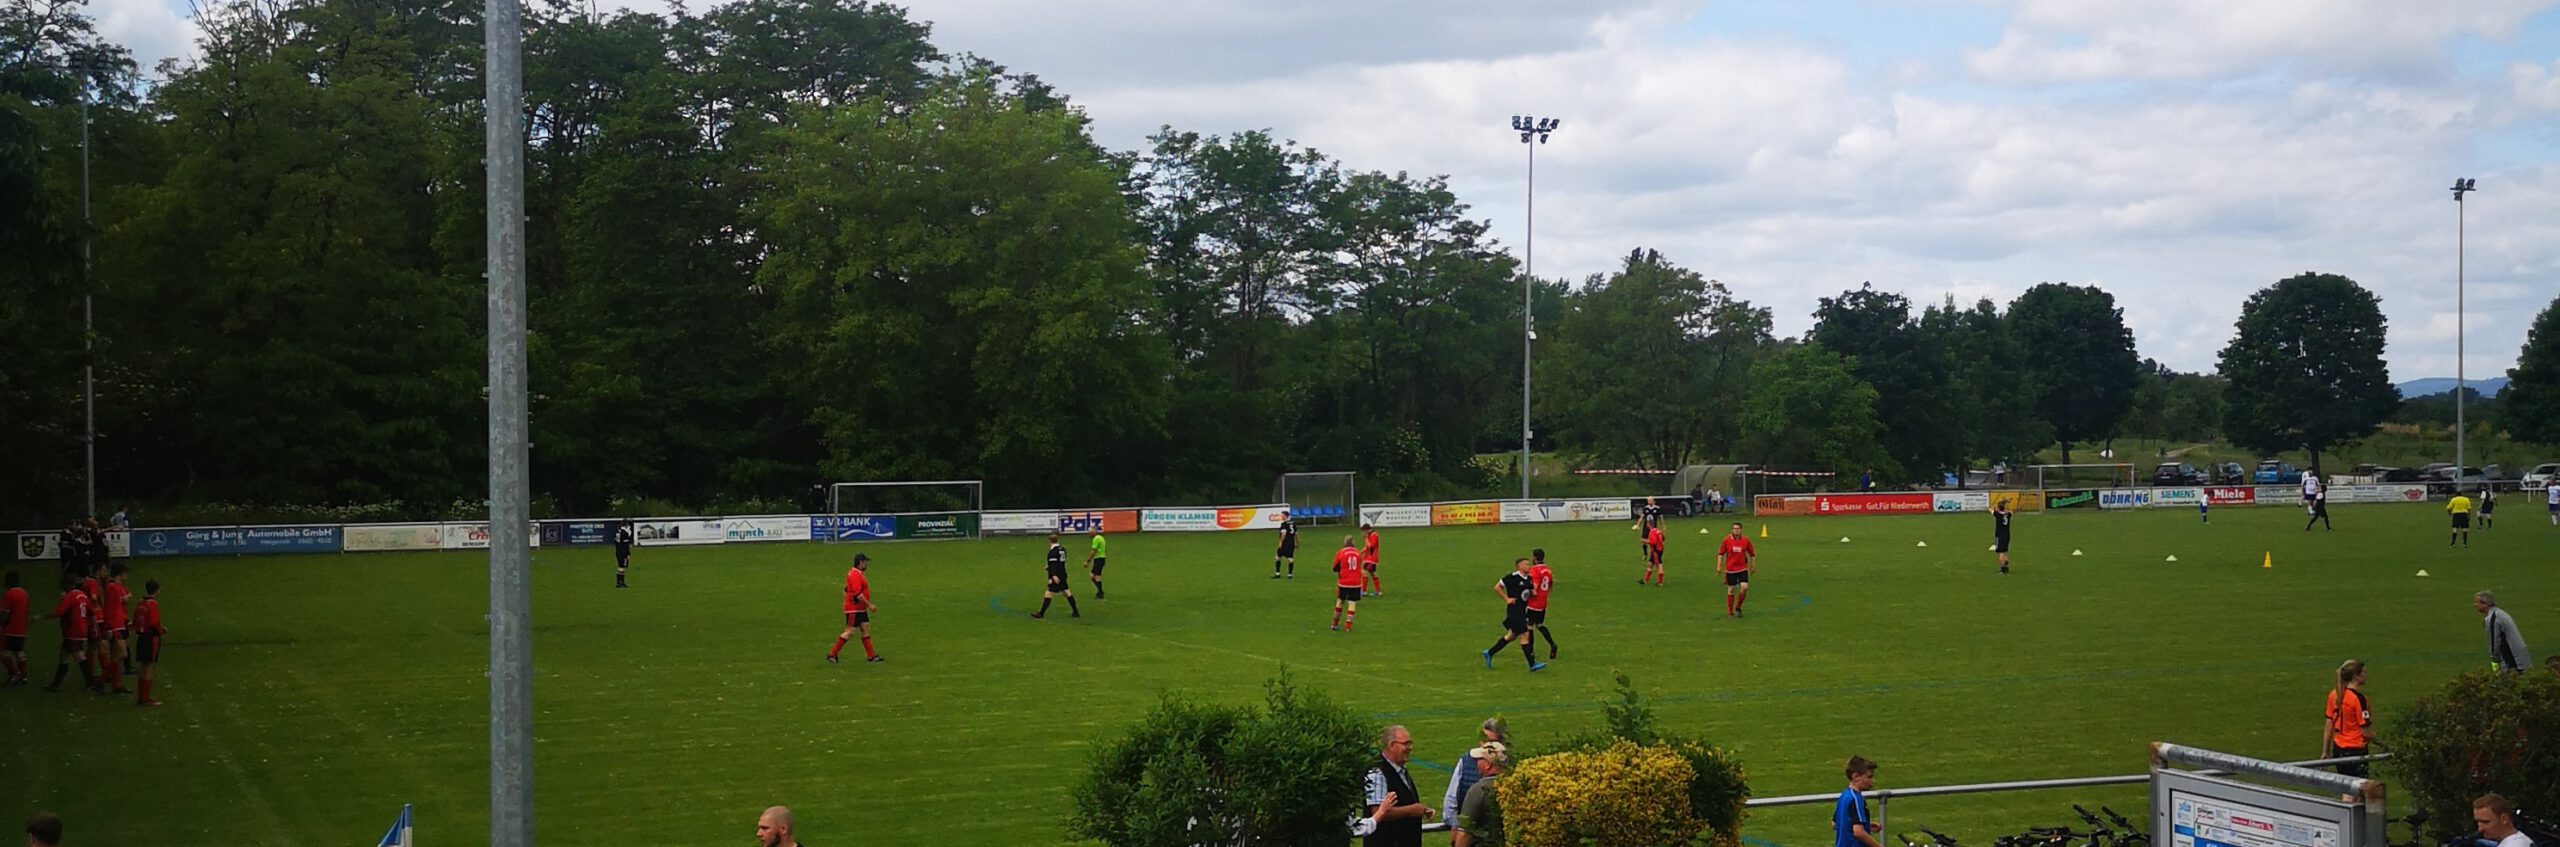 Fußballspiel des Kameradschaftsverein der Freiwilligen Feuerwehr gegen den "KC van der Strack"